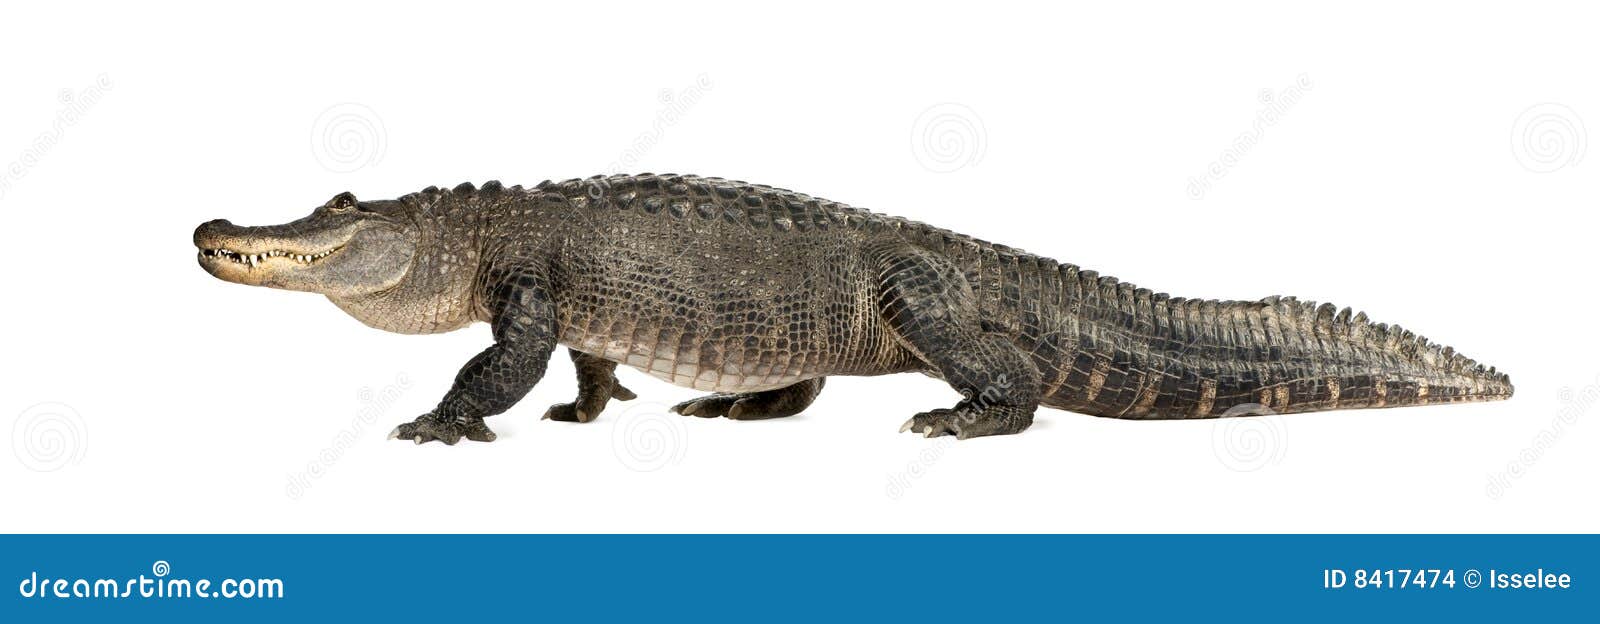 american alligator (30 years) - alligator mississi